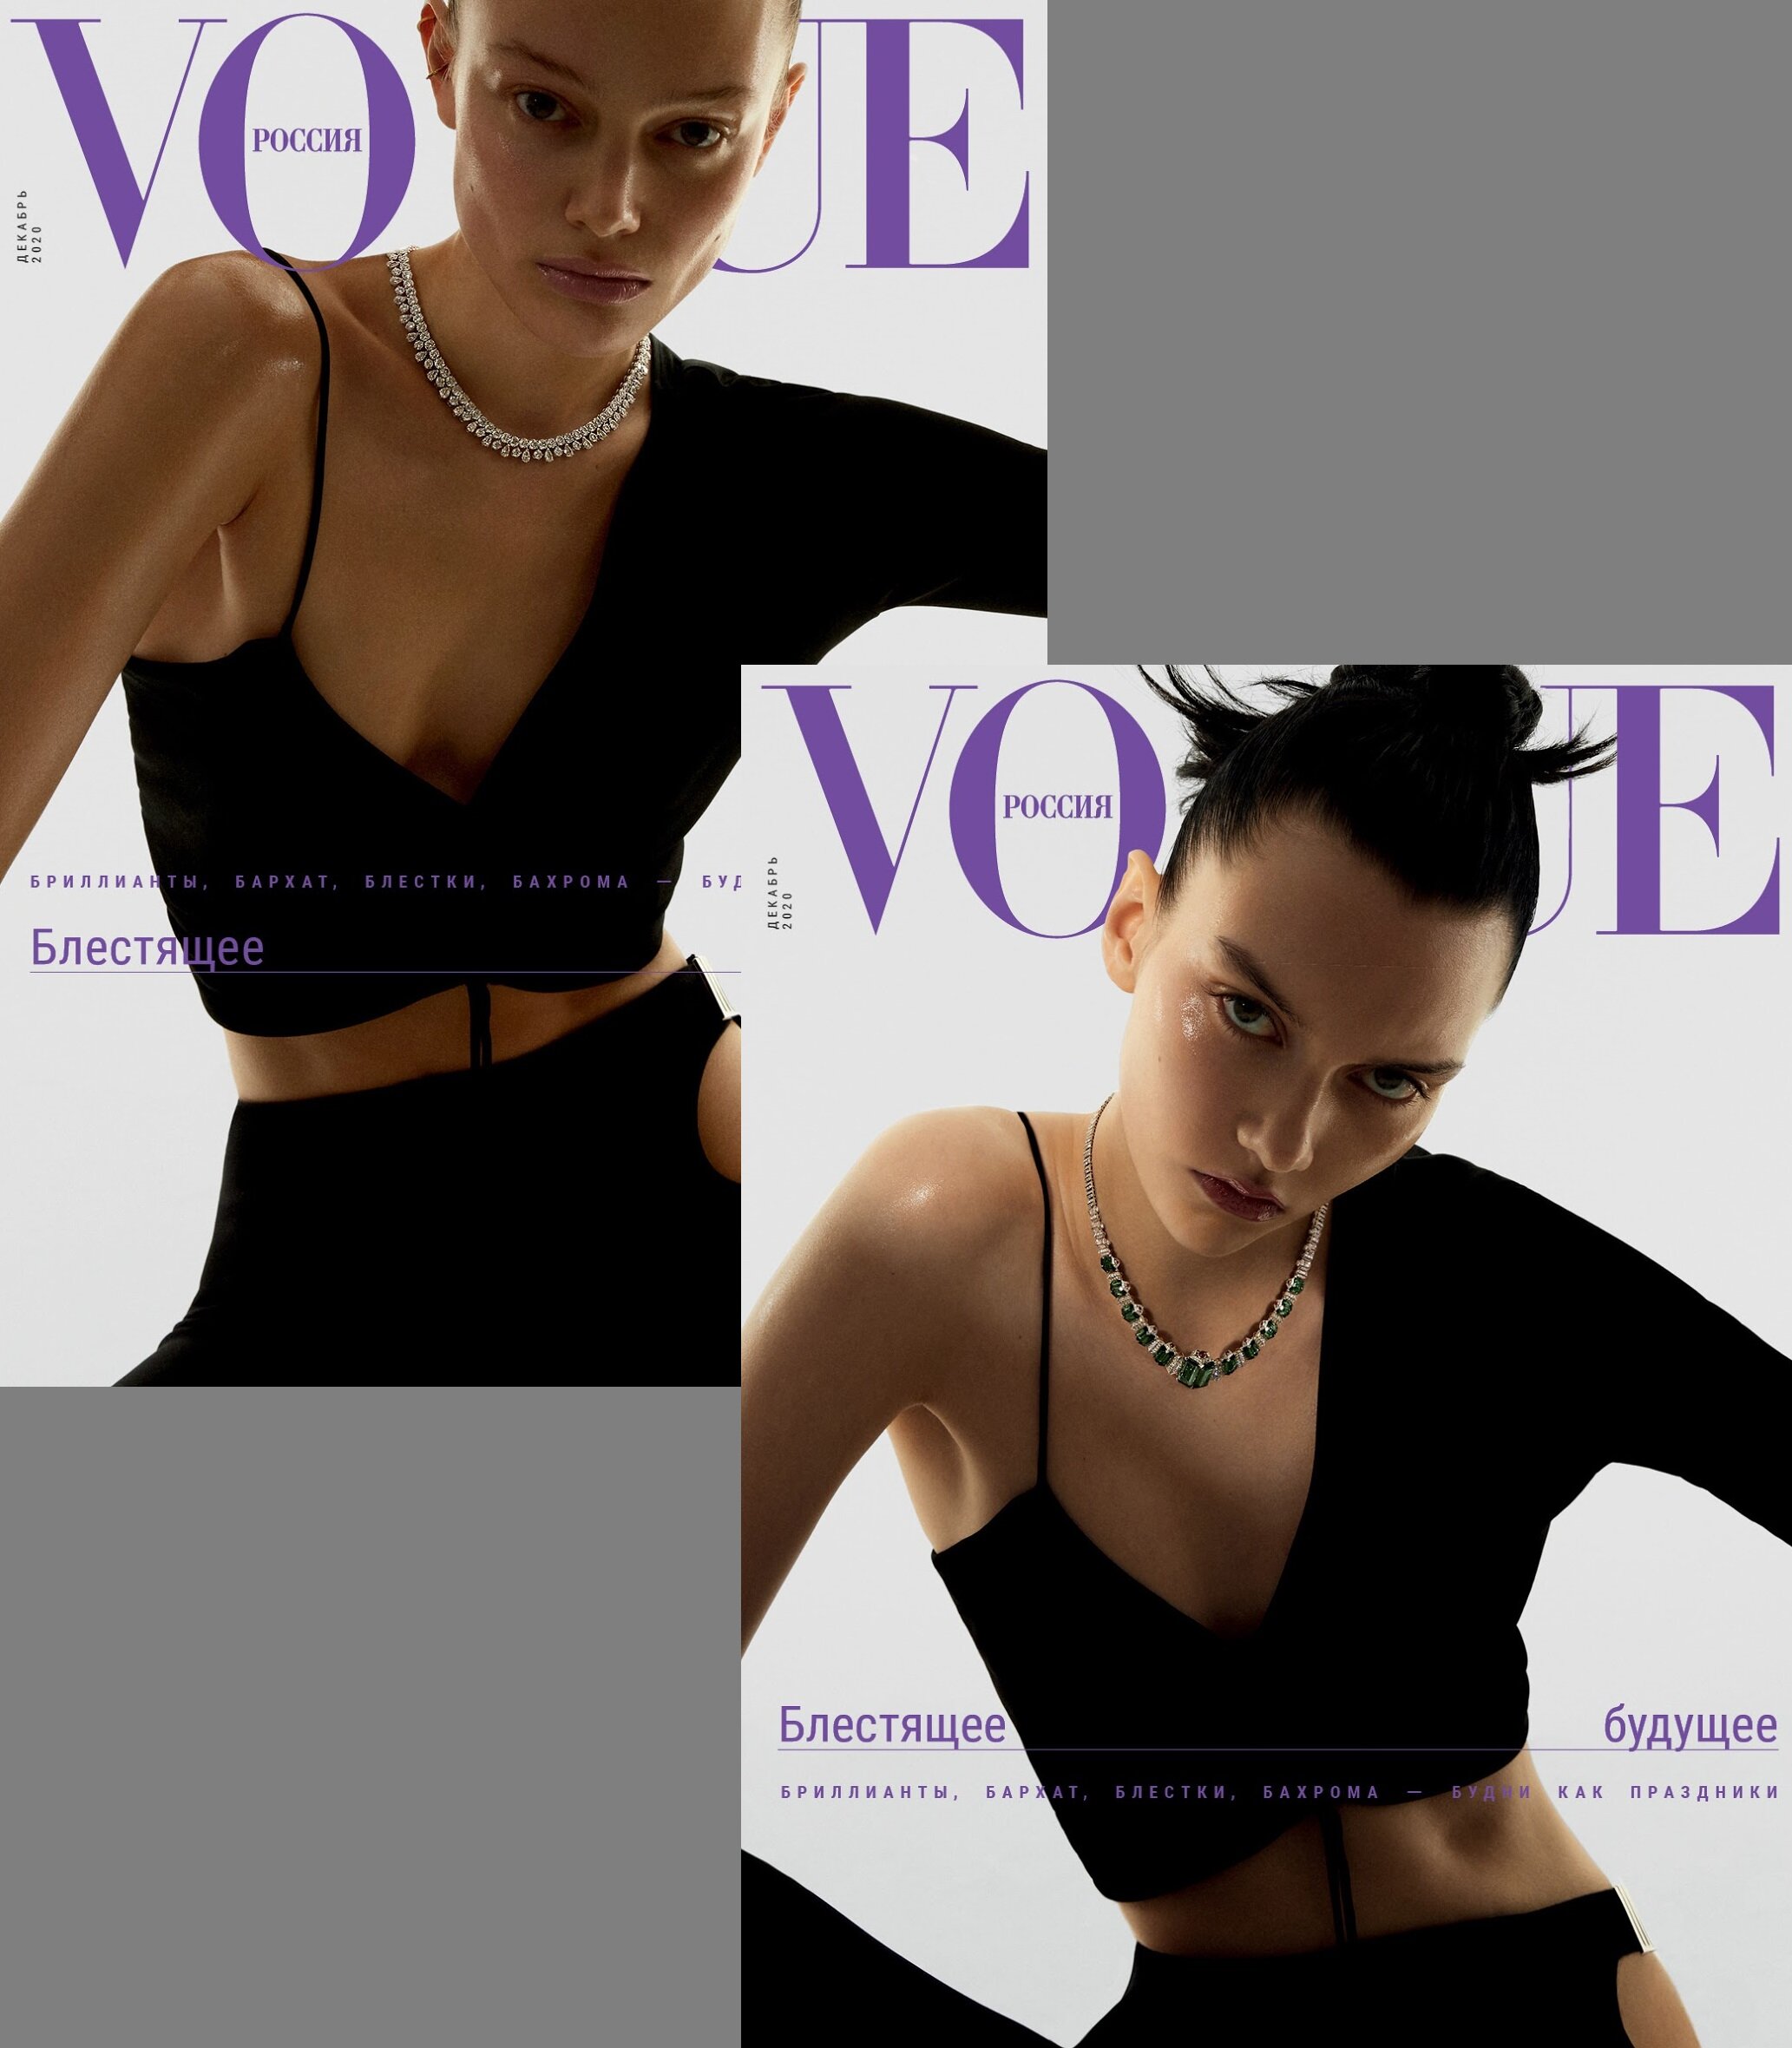 Vito Fernicola for Vogue Russia Dec 2020 (2).jpg